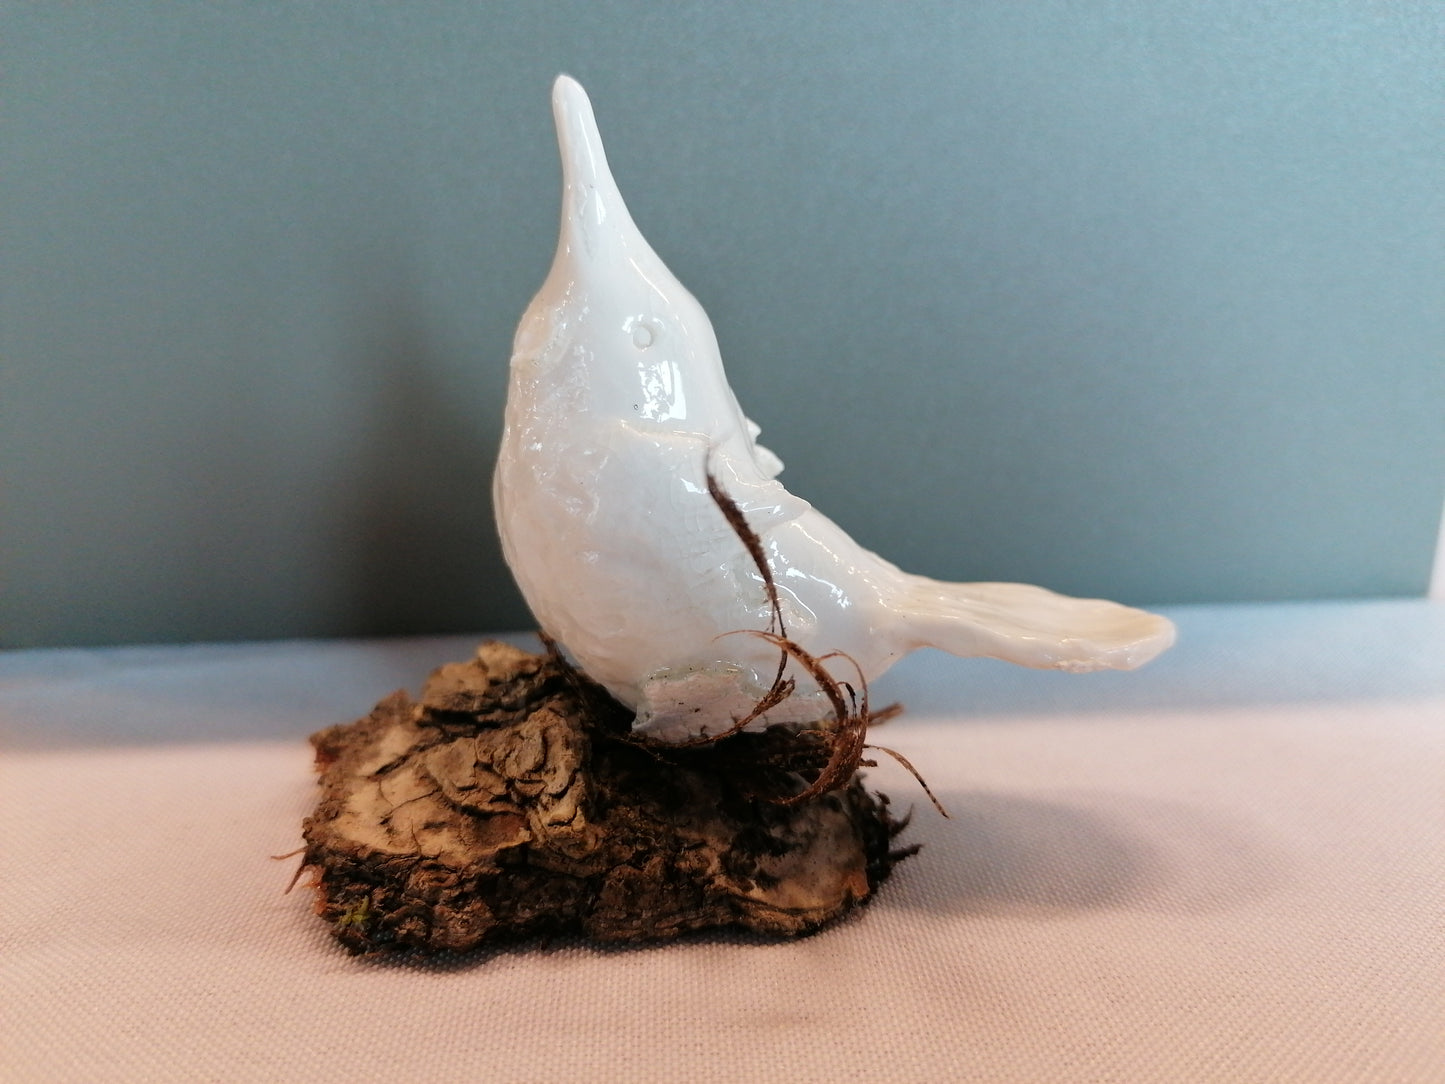 Oiseau de porcelaine n °11 by Sandrine De Zorzi